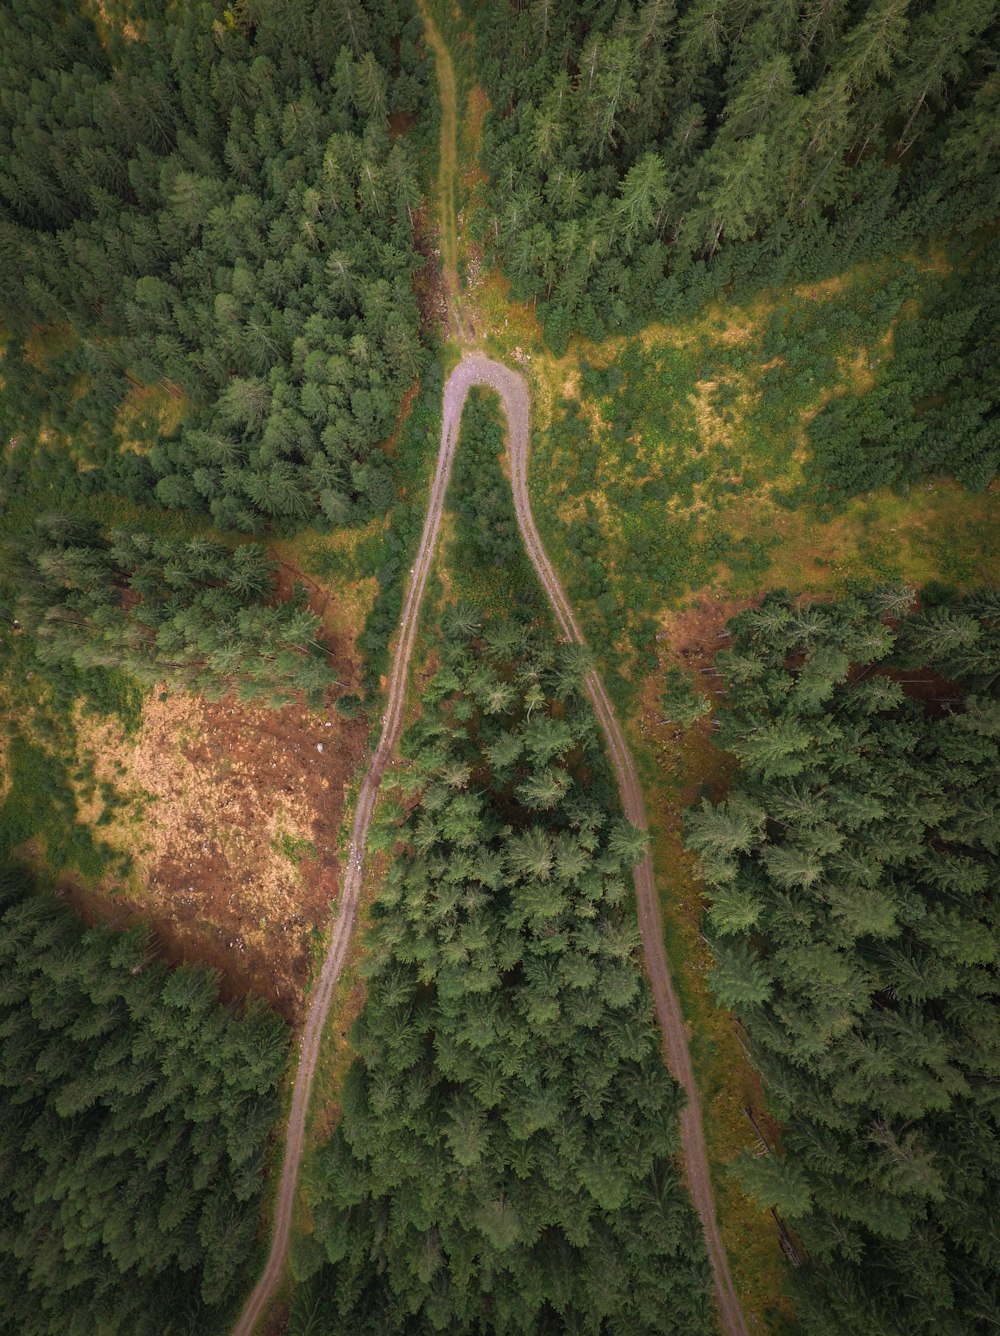 Luftaufnahme einer unbefestigten Straße, die tagsüber von Bäumen umgeben ist